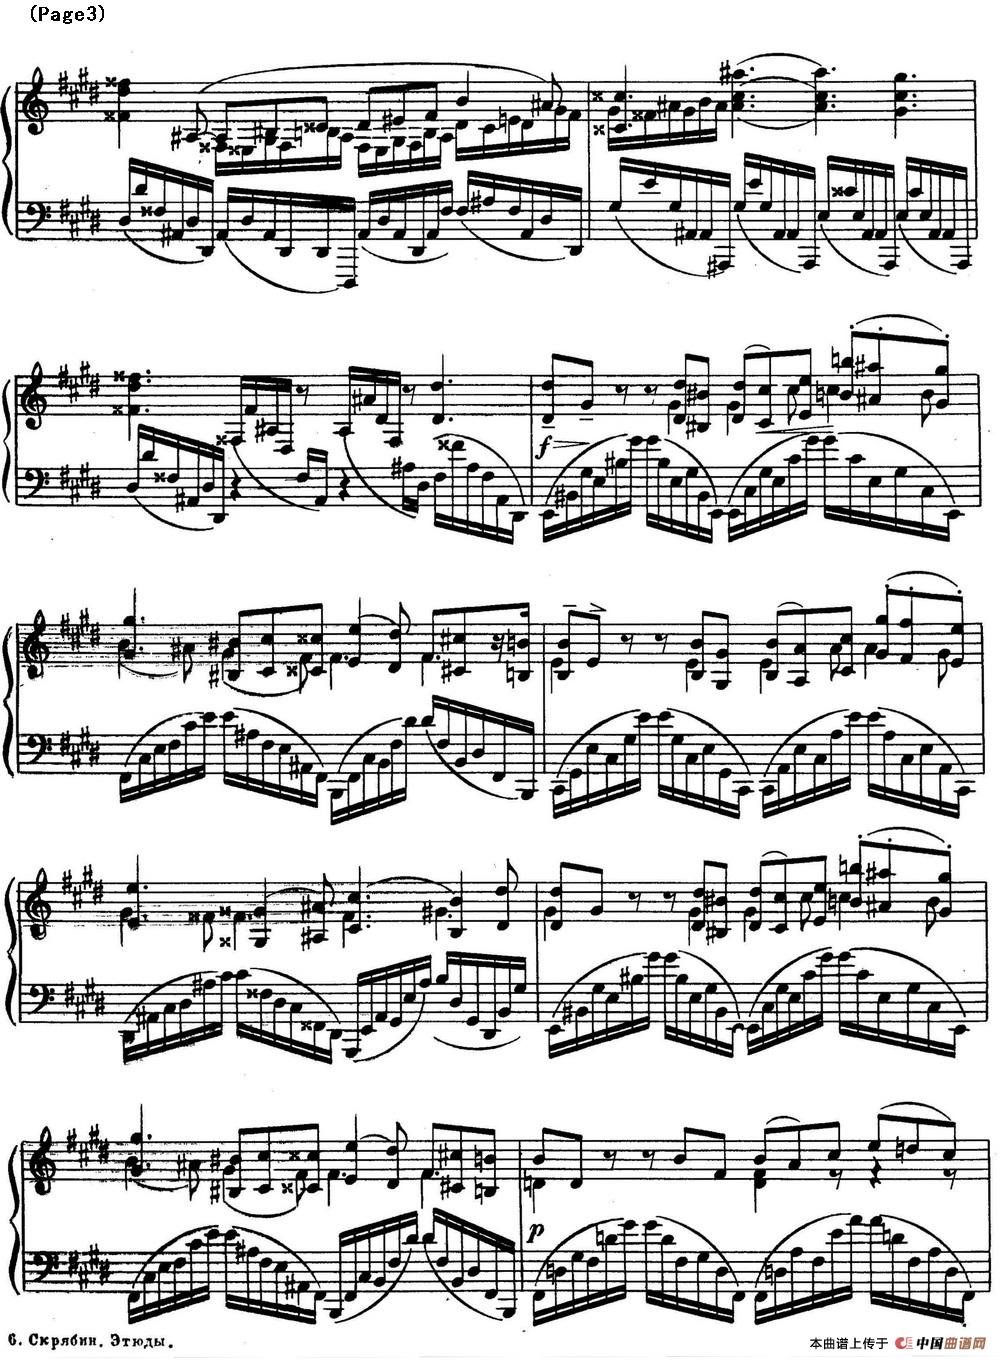 斯克里亚宾8首钢琴练习曲 Op42（No.5 Alexander Scriabin Etudes）(1)_Scriabin Etude Op.42 No.5_页面_3.jpg